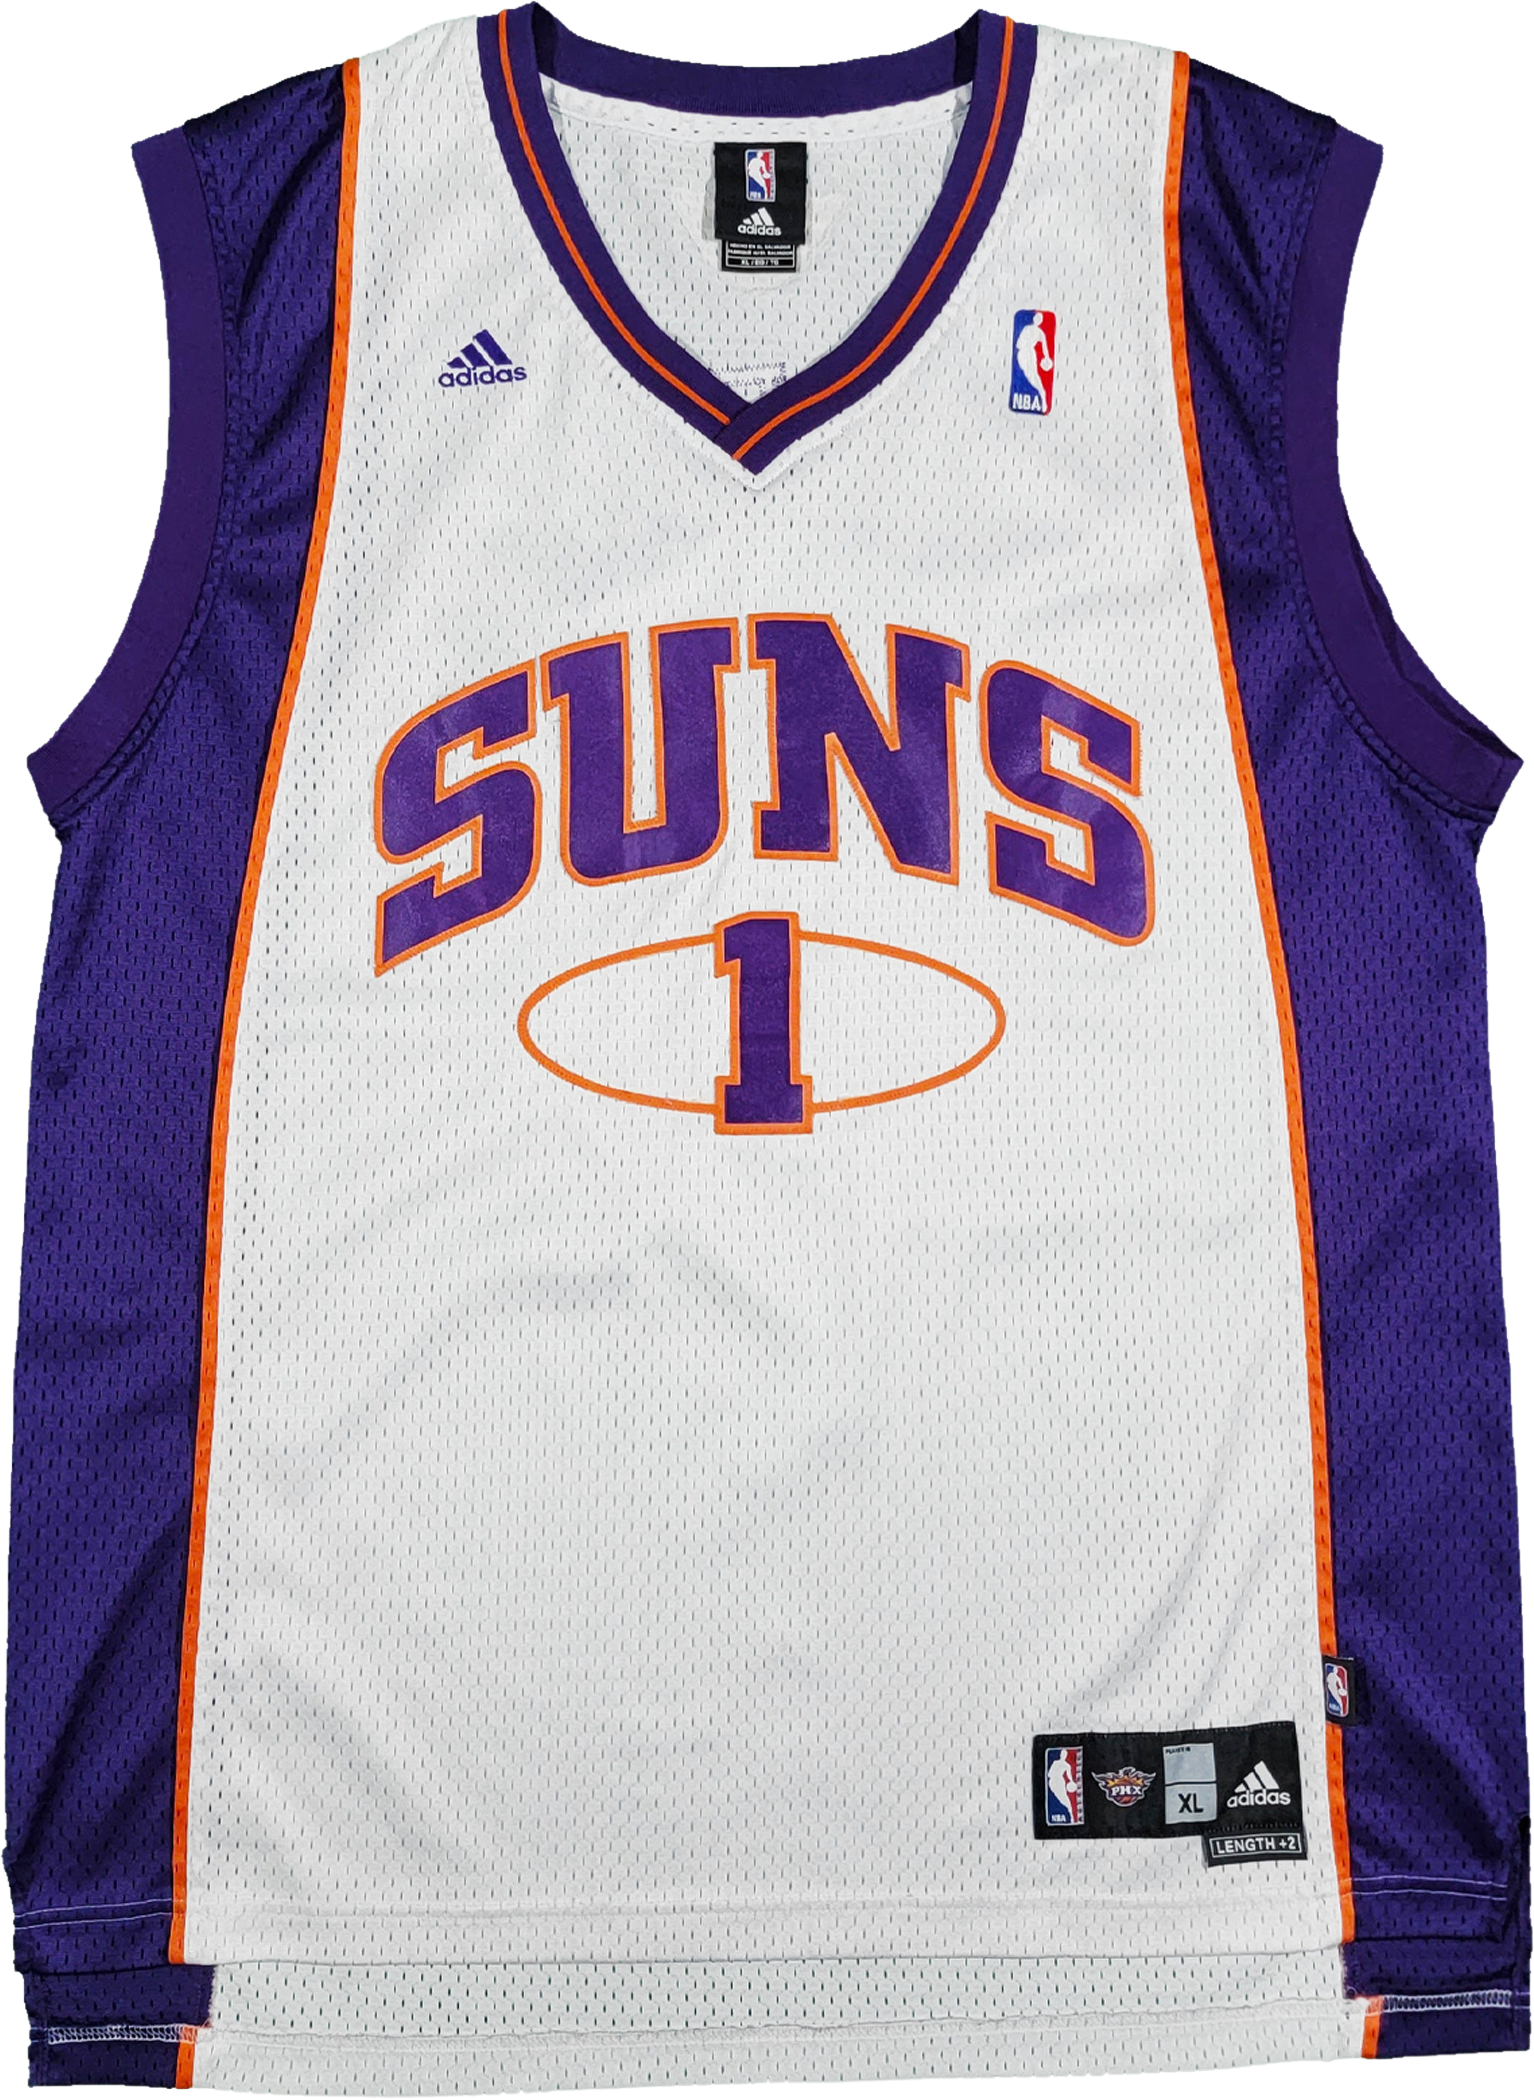 Phoenix Suns Basketball Jersey Size Medium M Purple Adidas NBA Amar'e  Stoudemire